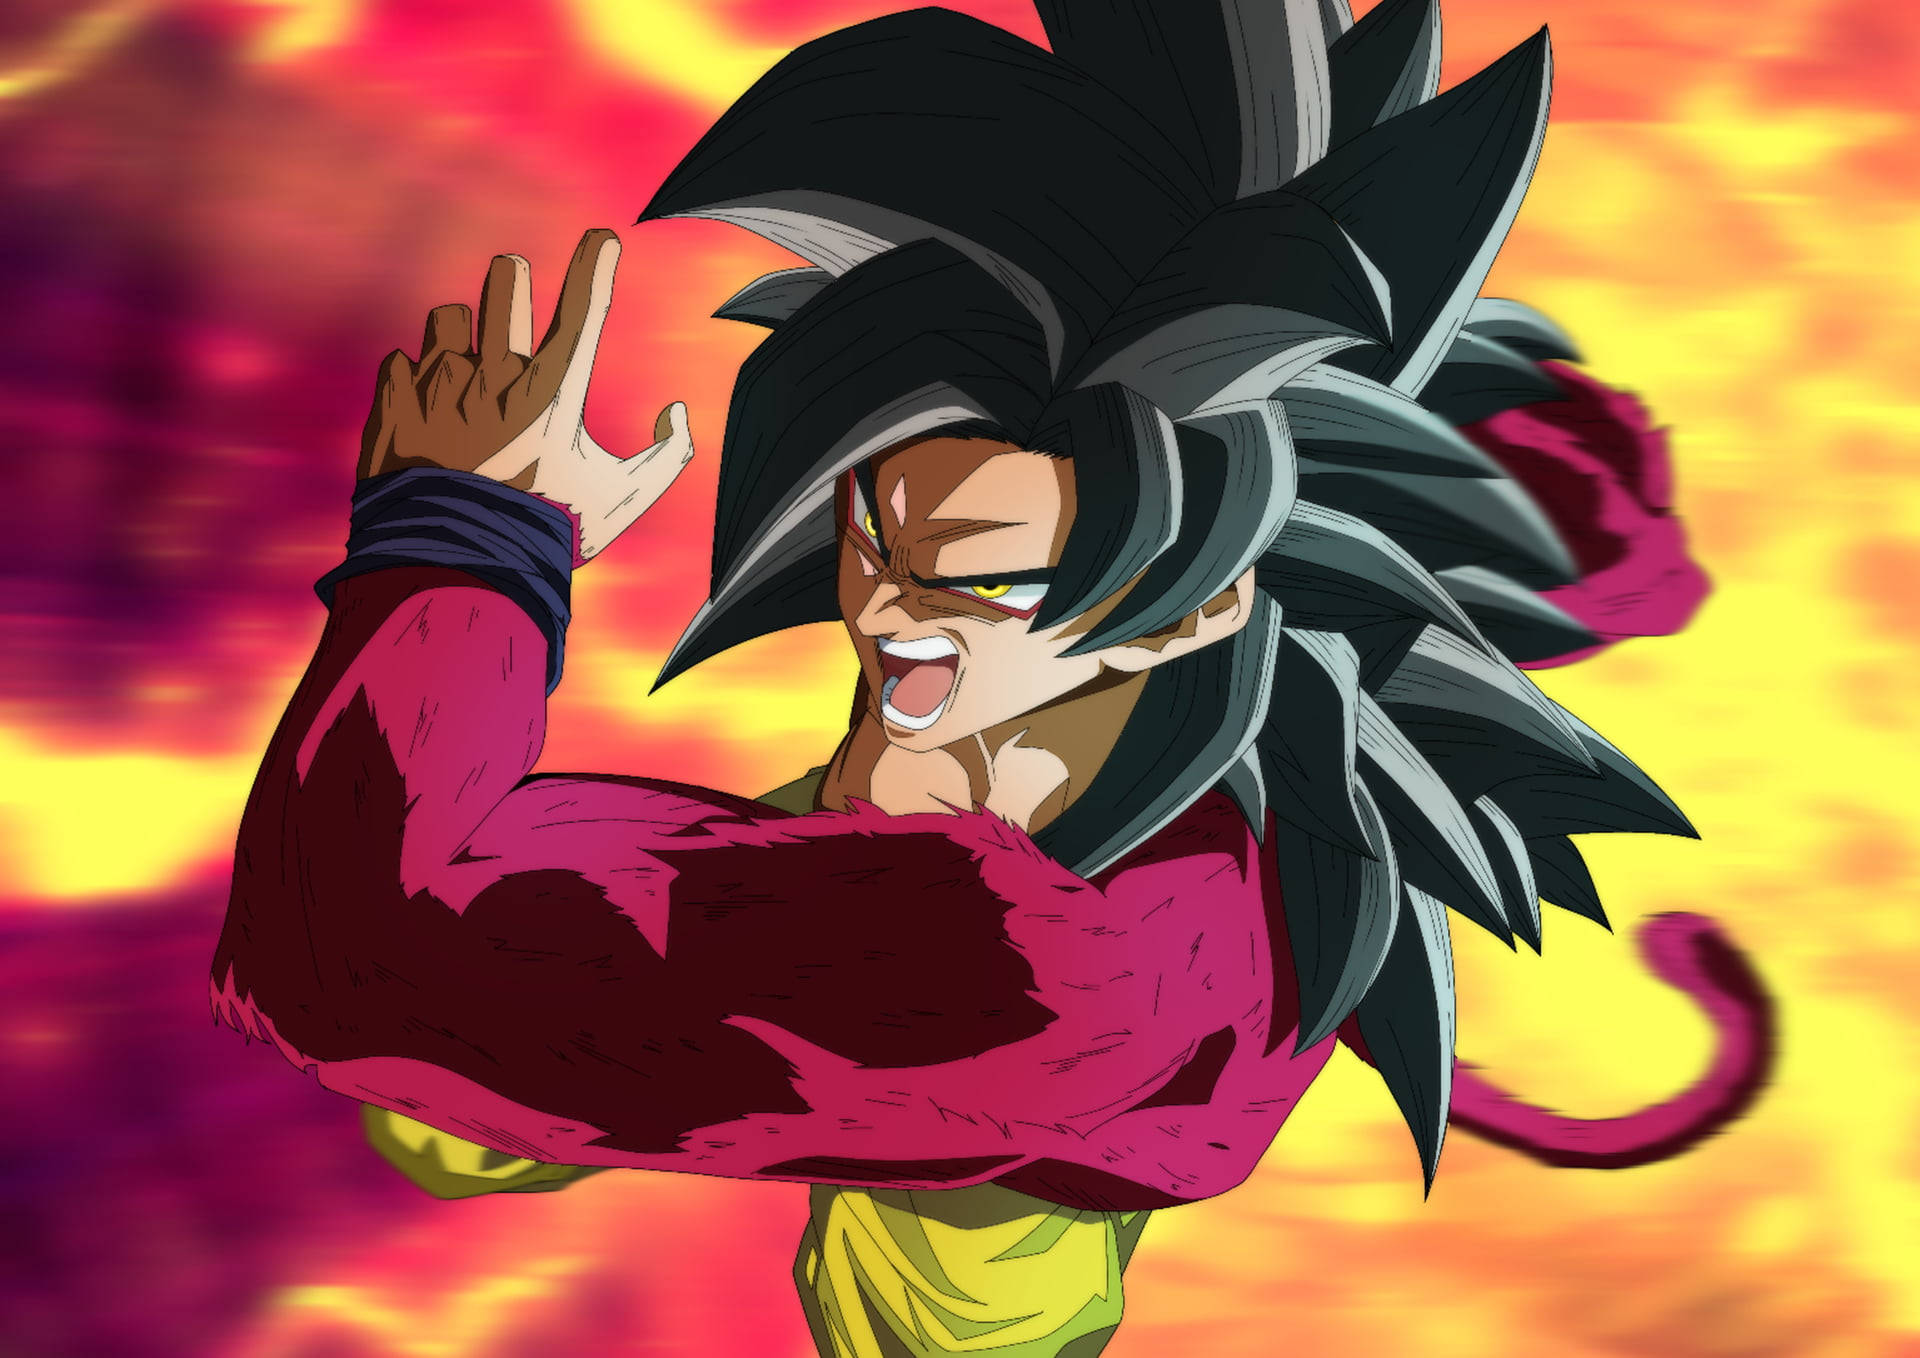 Ssj4 Goku Fighting Pose